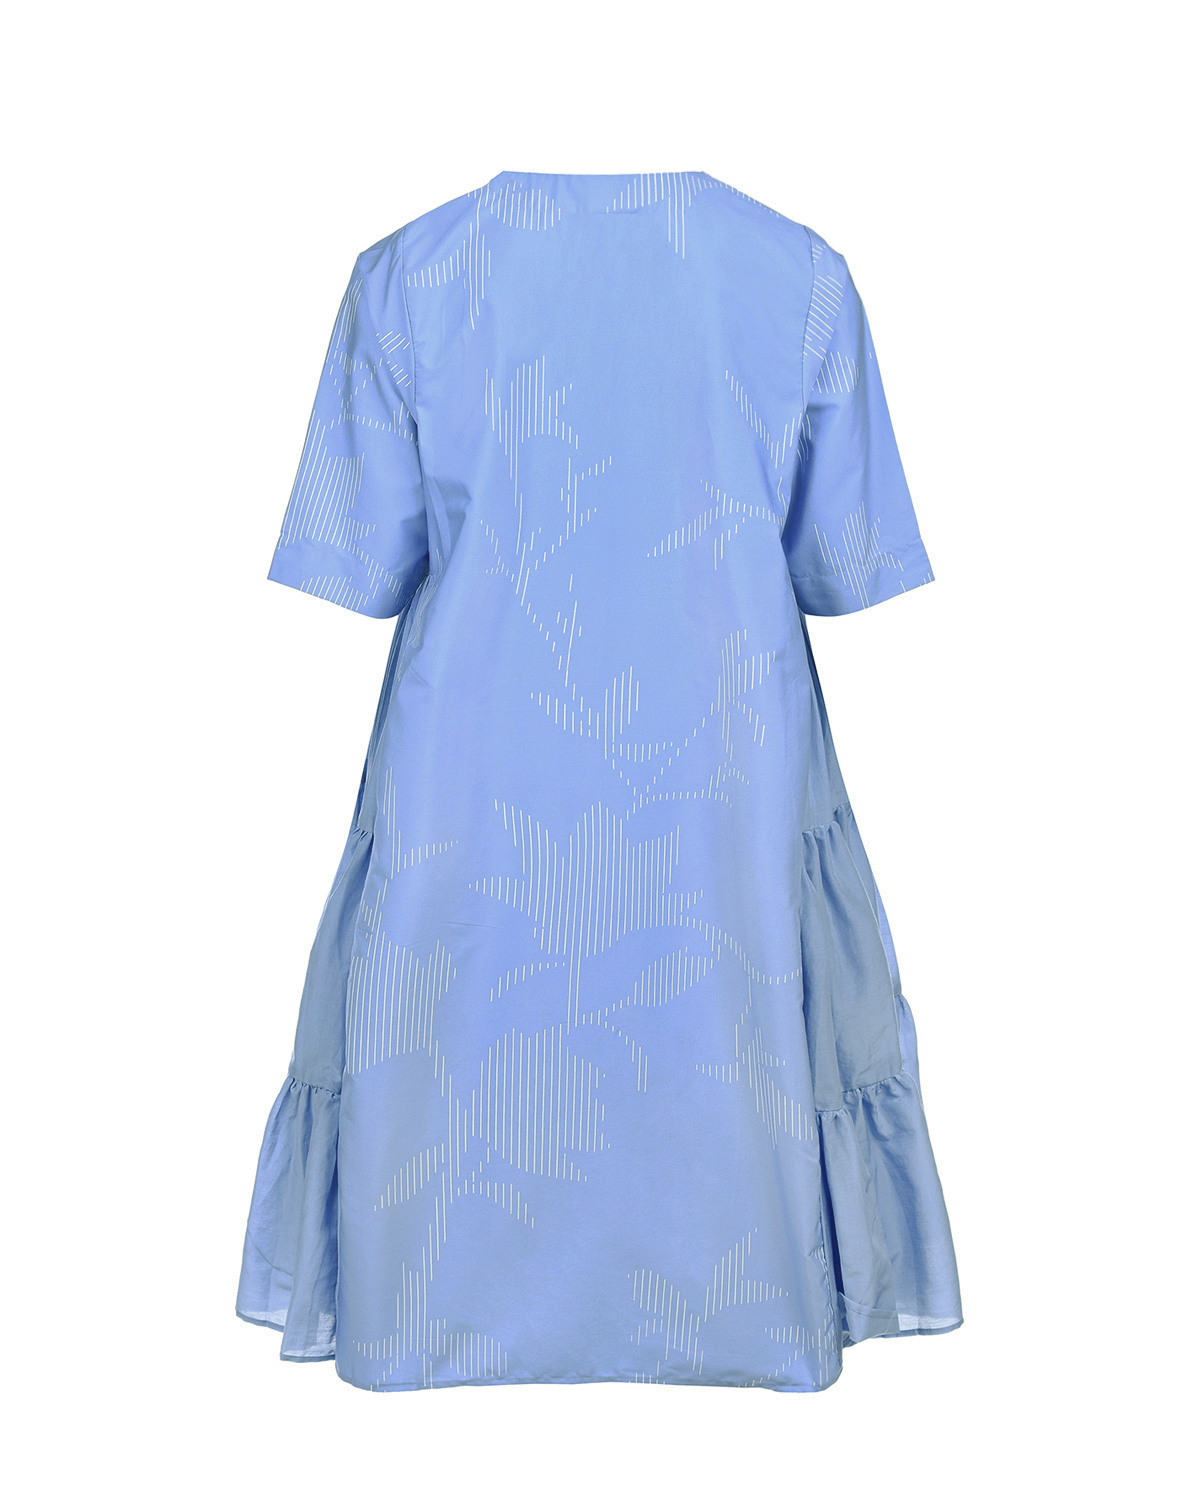 Голубое расклешенное платье LOVE BIRDS, размер 38, цвет голубой - фото 5